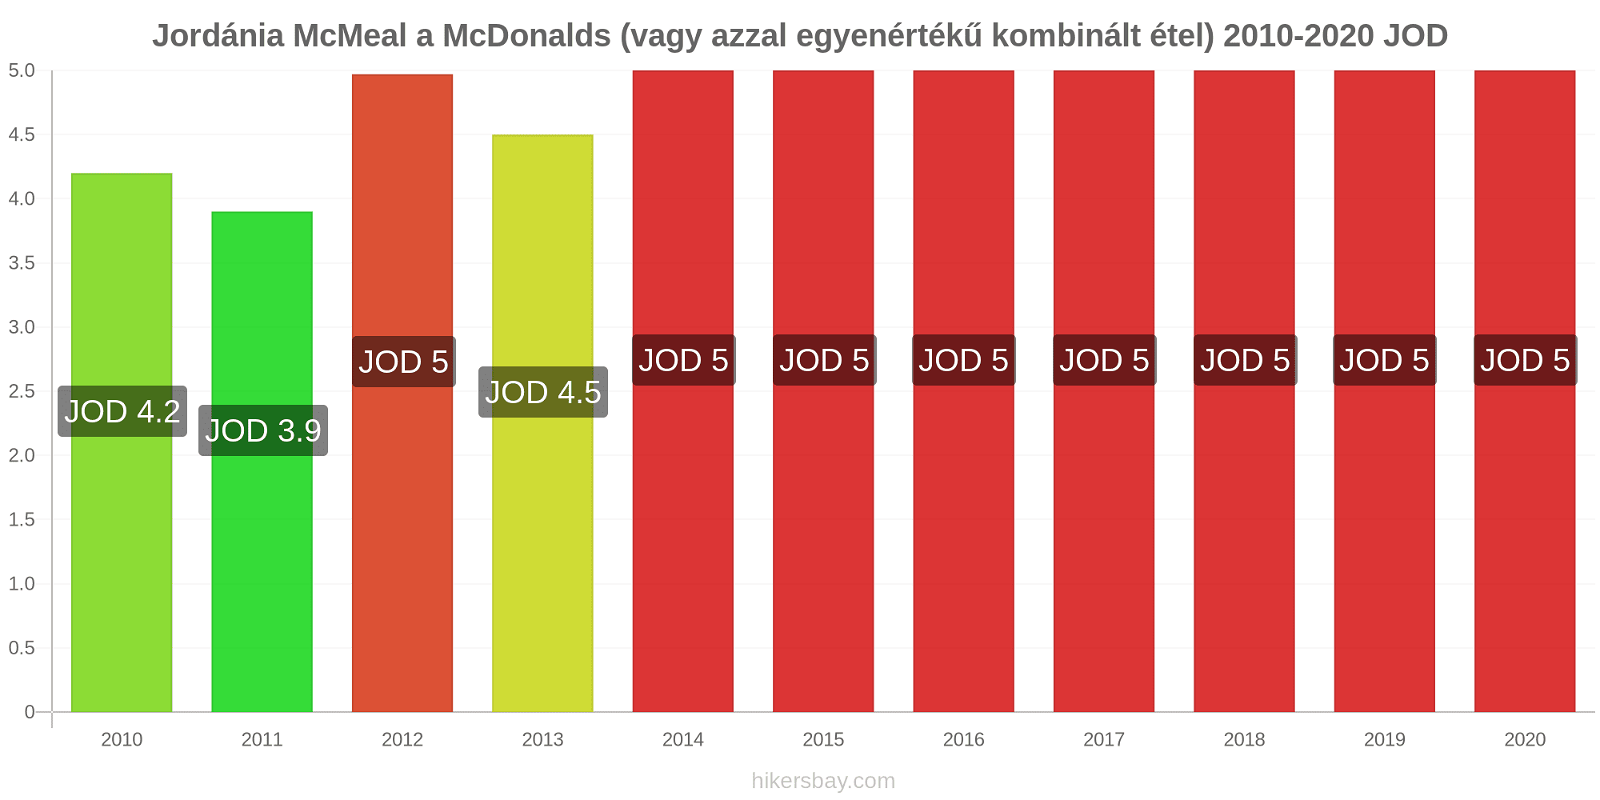 Jordánia árváltozások McMeal a McDonalds (vagy azzal egyenértékű kombinált étel) hikersbay.com